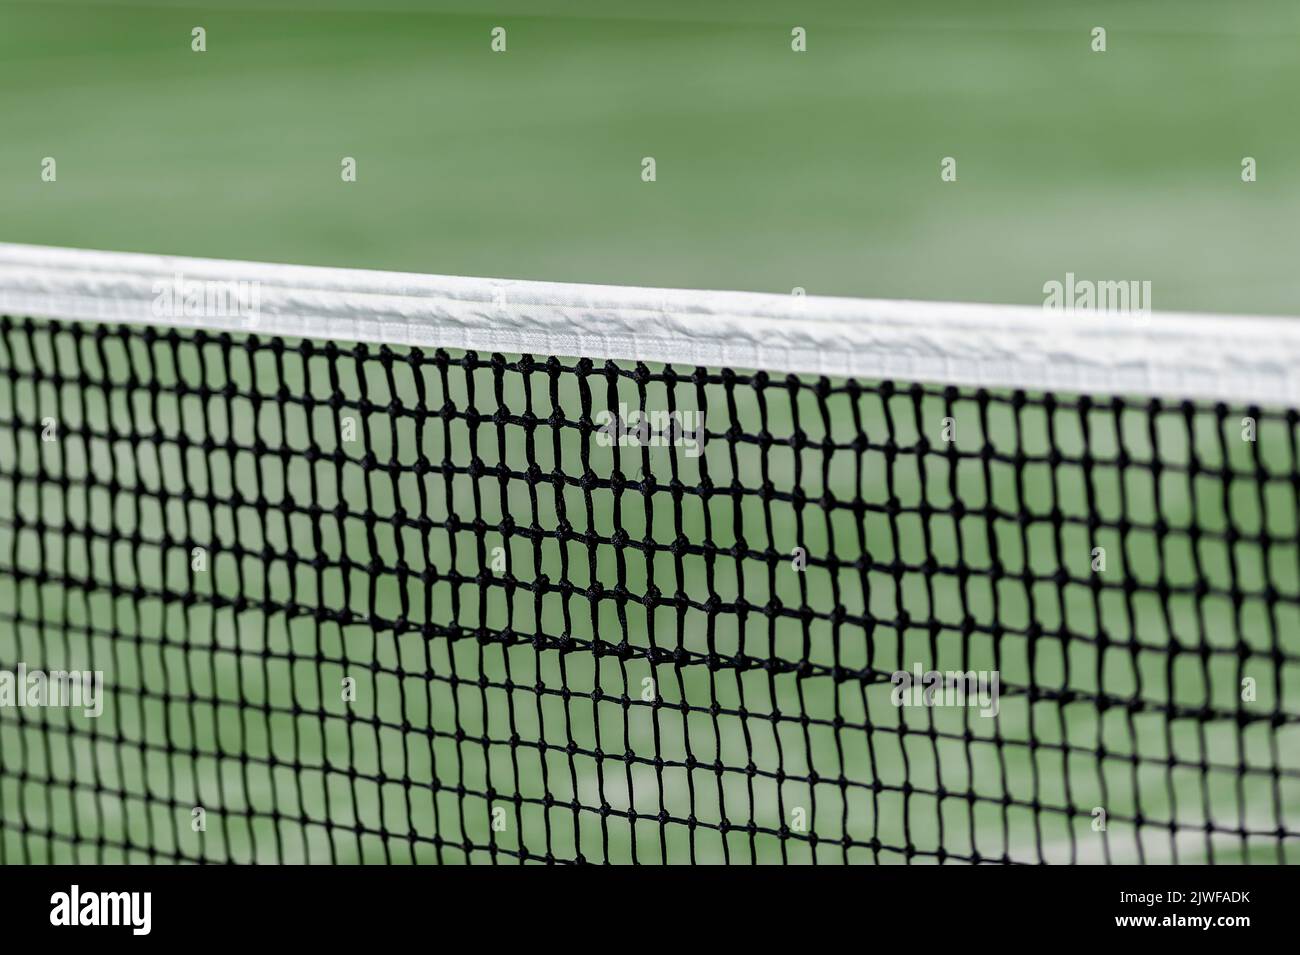 Filet de paddle-tennis vert et terrain dur. Affiche sur le thème du sport horizontal, cartes de vœux, en-têtes, site Web et application Banque D'Images